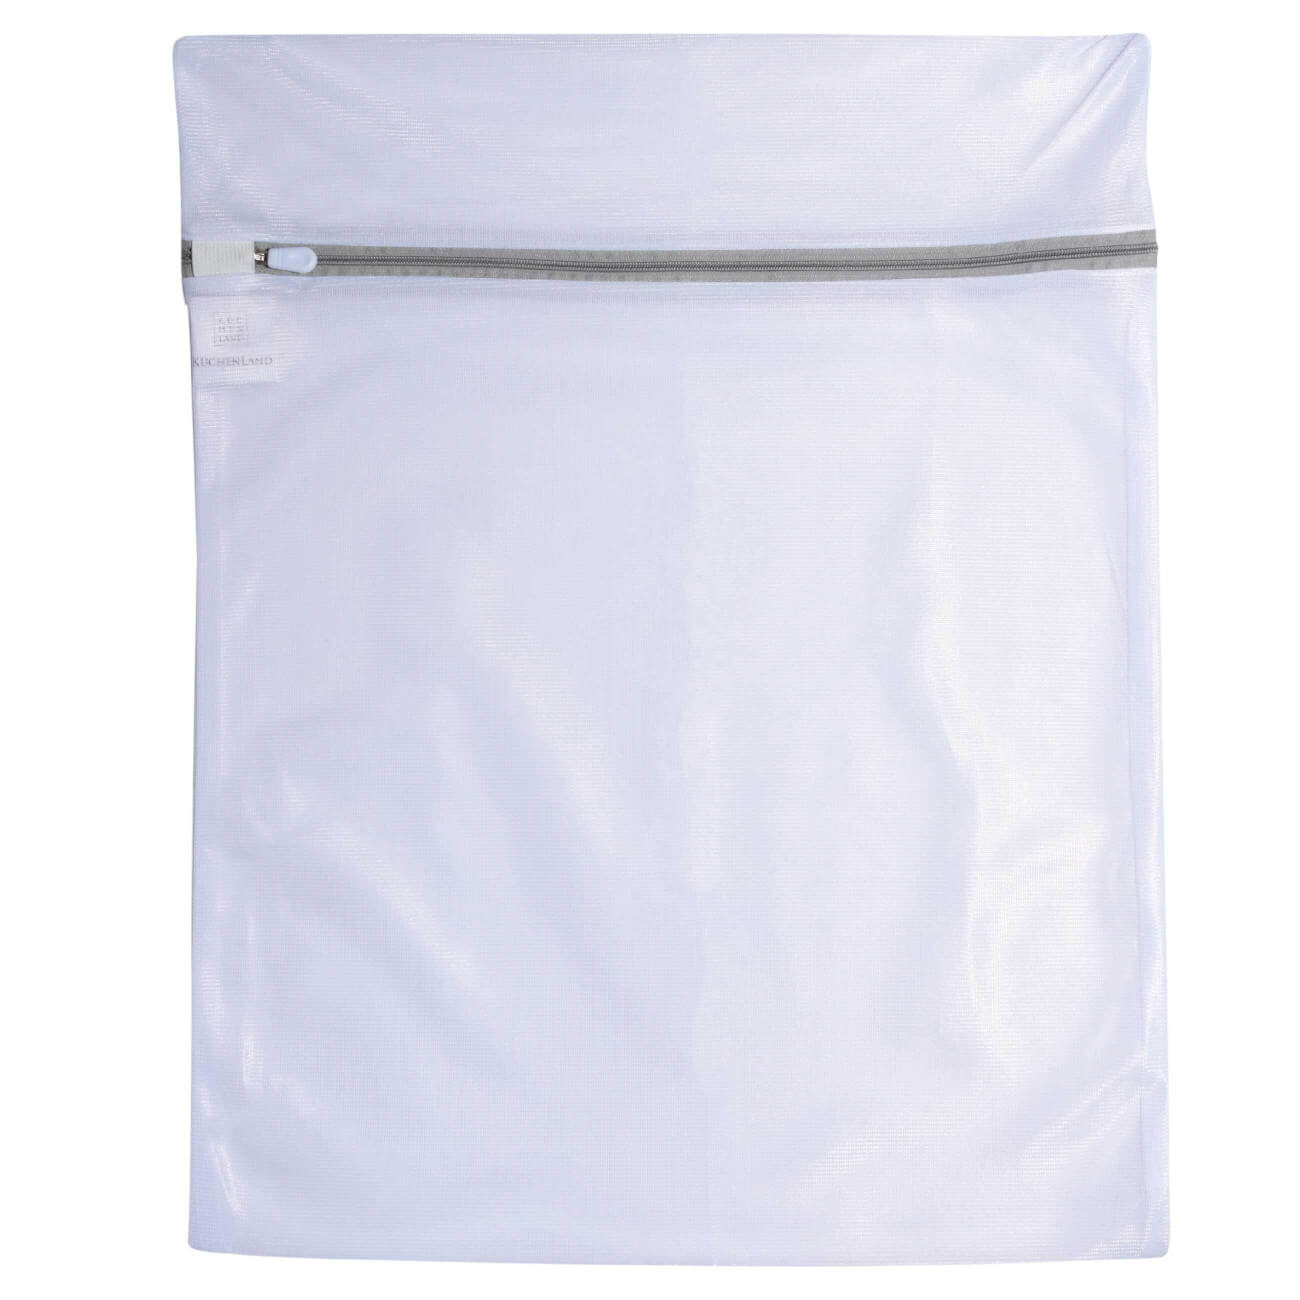 Мешок для стирки одежды, 40х50 см, полиэстер, бело-серый, Safety plus мешок для стирки одежды 40х50 см полиэстер safety plus